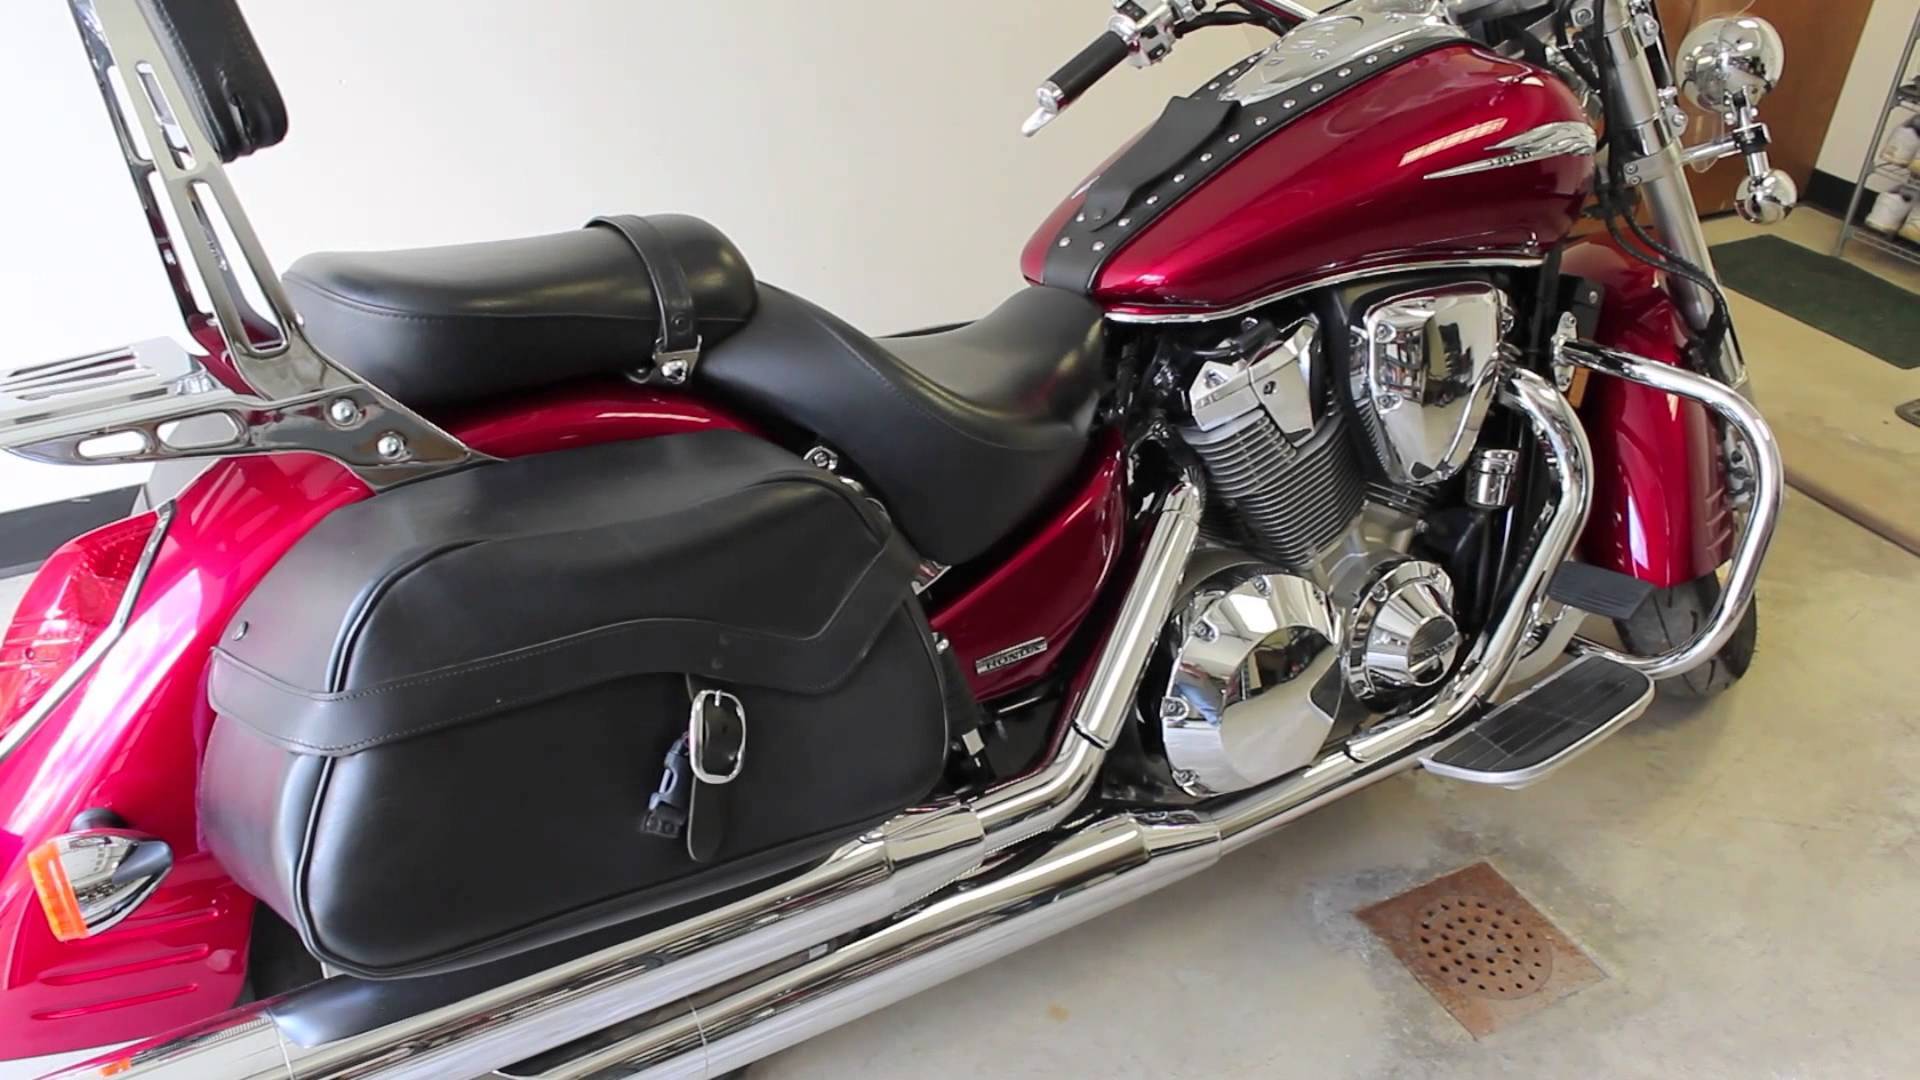 Мотоцикл honda vtx 1800r 2003 цена, фото, характеристики, обзор, сравнение на базамото